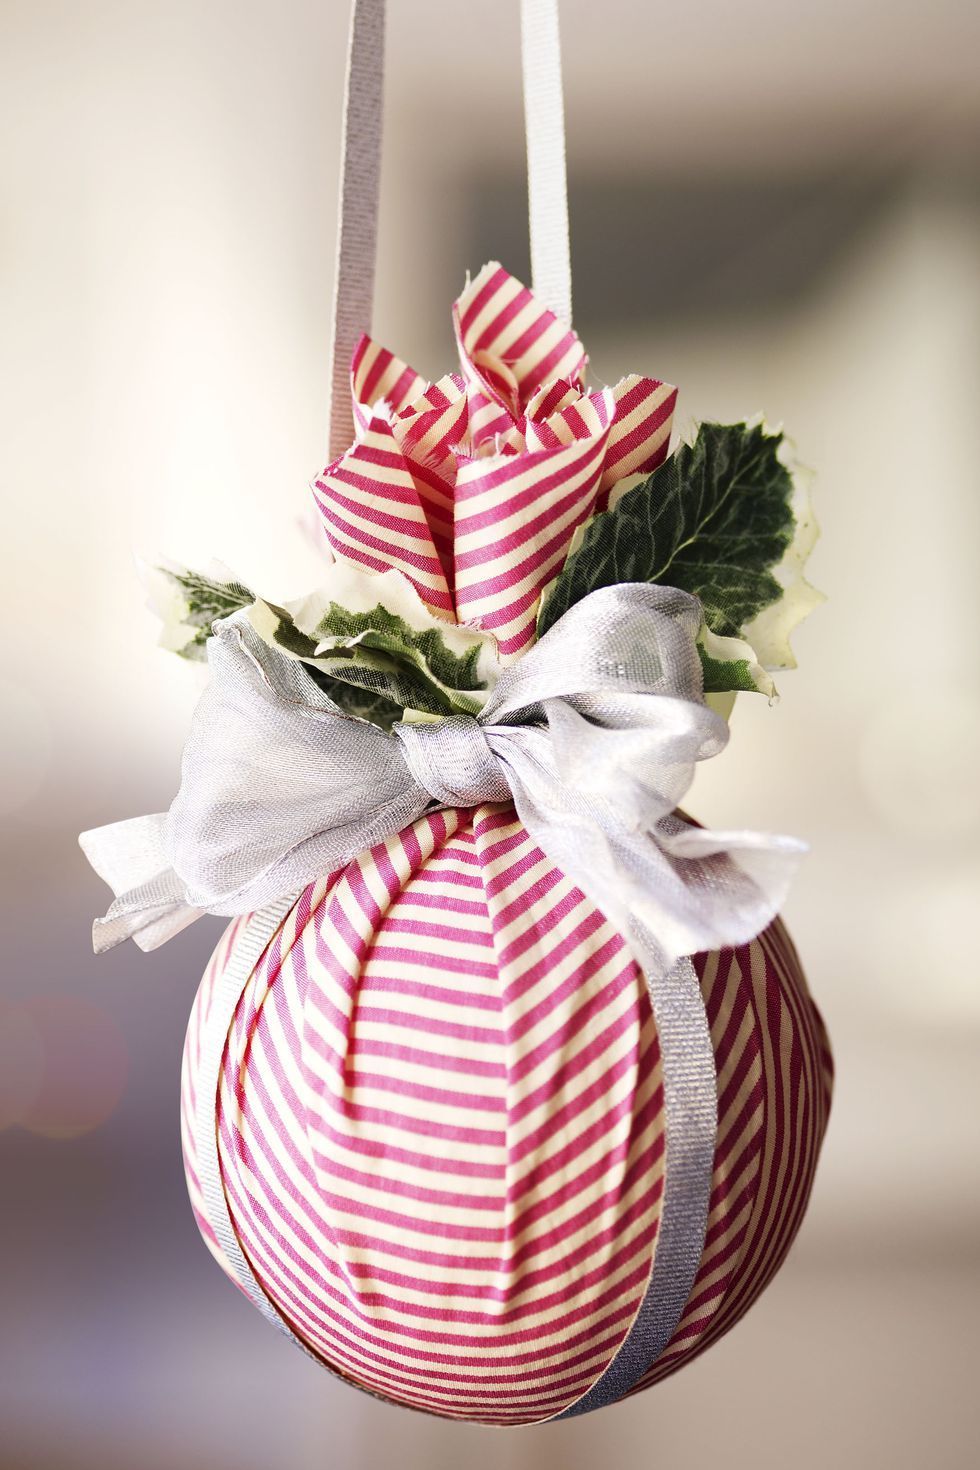 Cómo decorar las bolas de Navidad de poliespan?  Decorar bolas de navidad,  Bolas de navidad, Decoración de unas